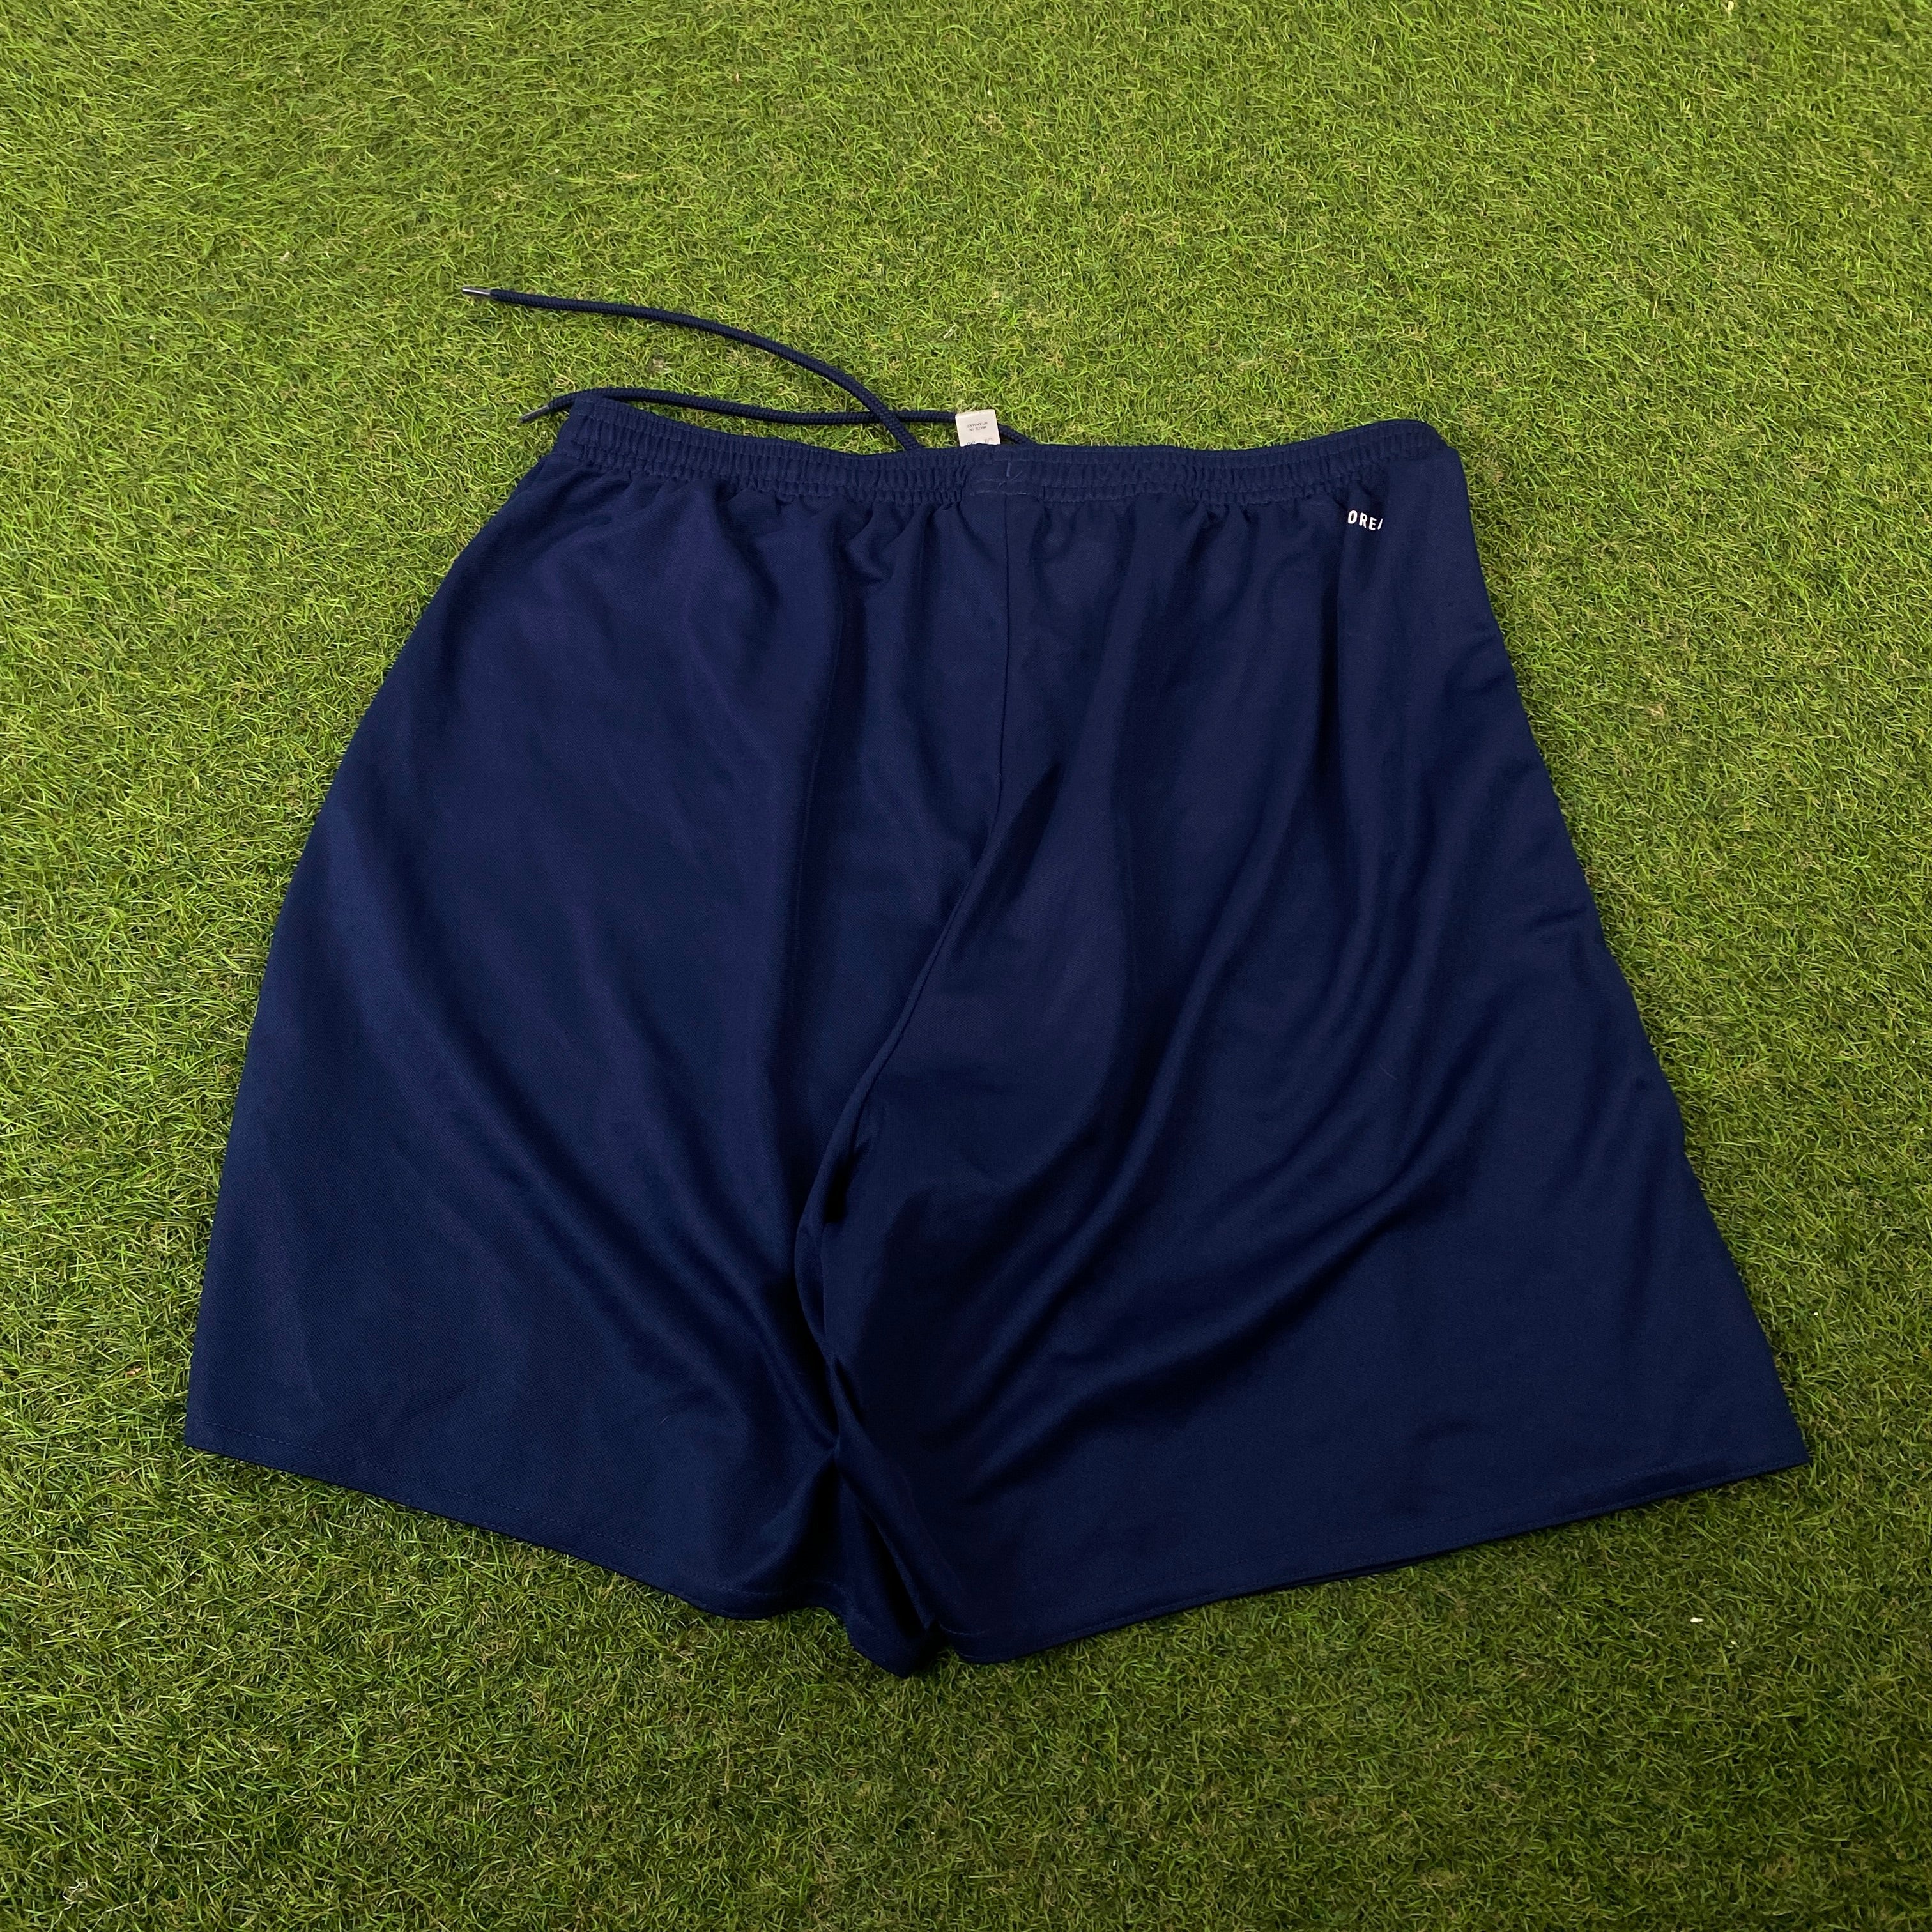 00s Adidas Nylon Football Shorts Blue Large